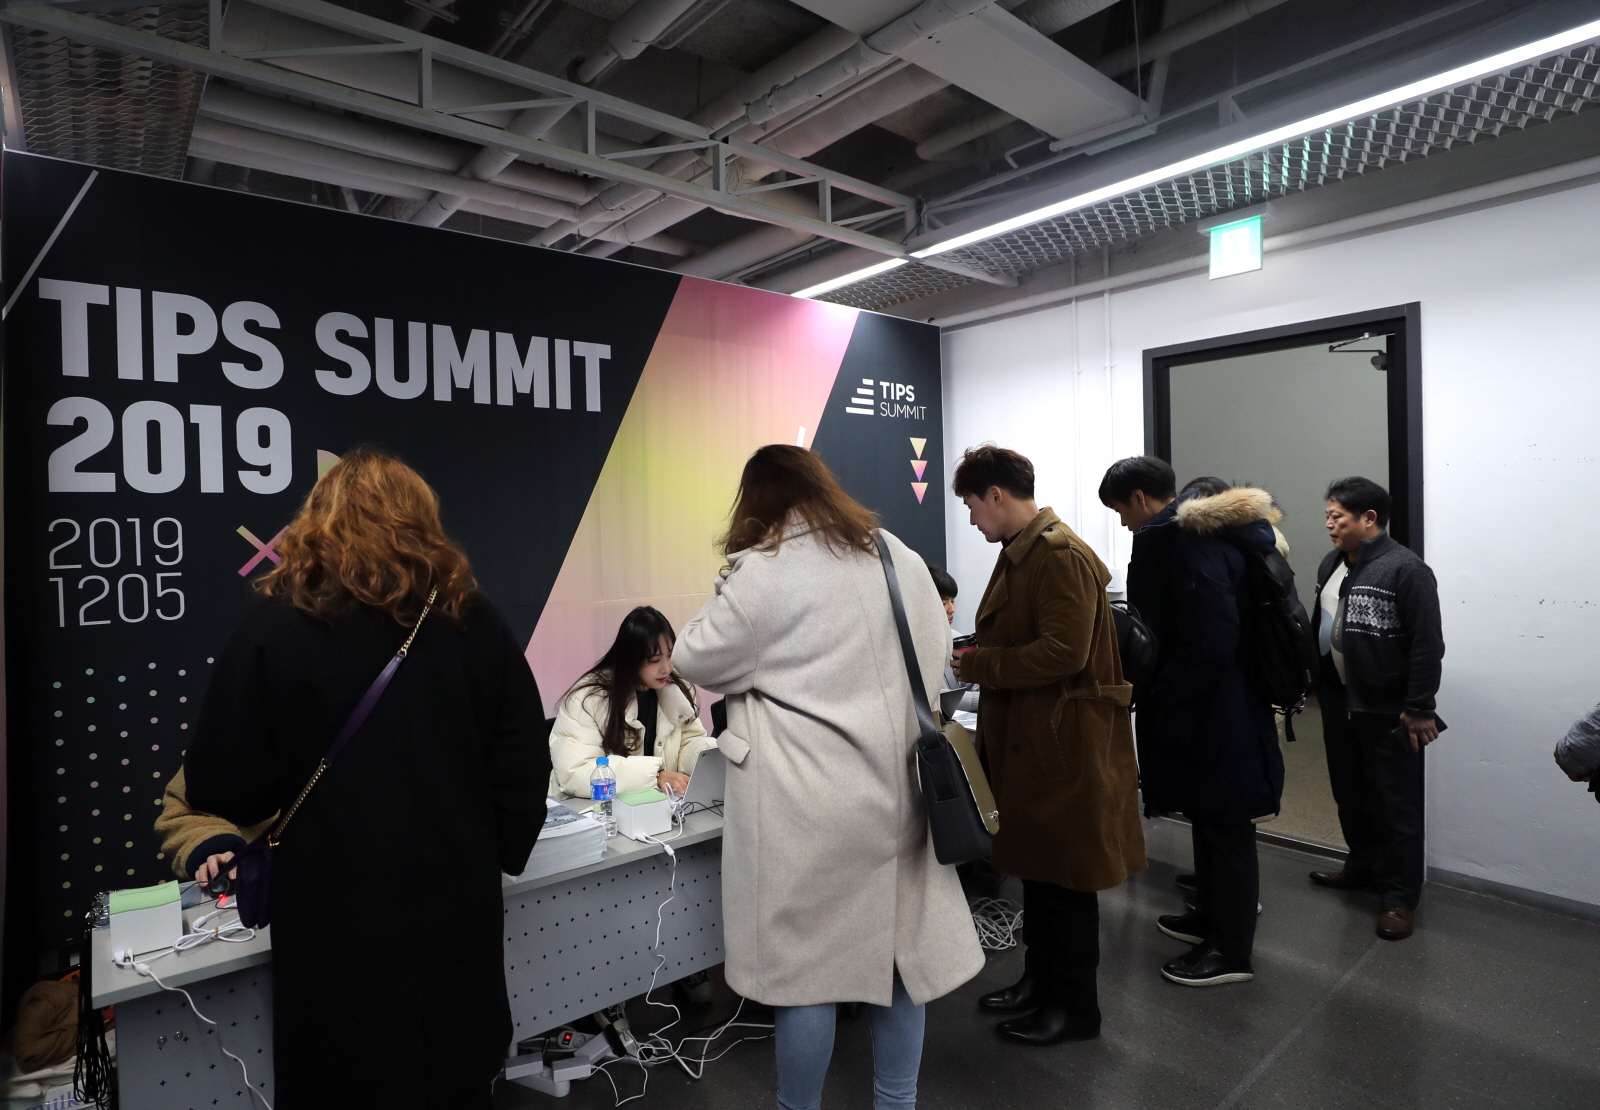 강남구, 5일 ‘팁스서밋 2019’ 개최 창업 성공 강연 및 기업 간 네트워킹의 장 마련